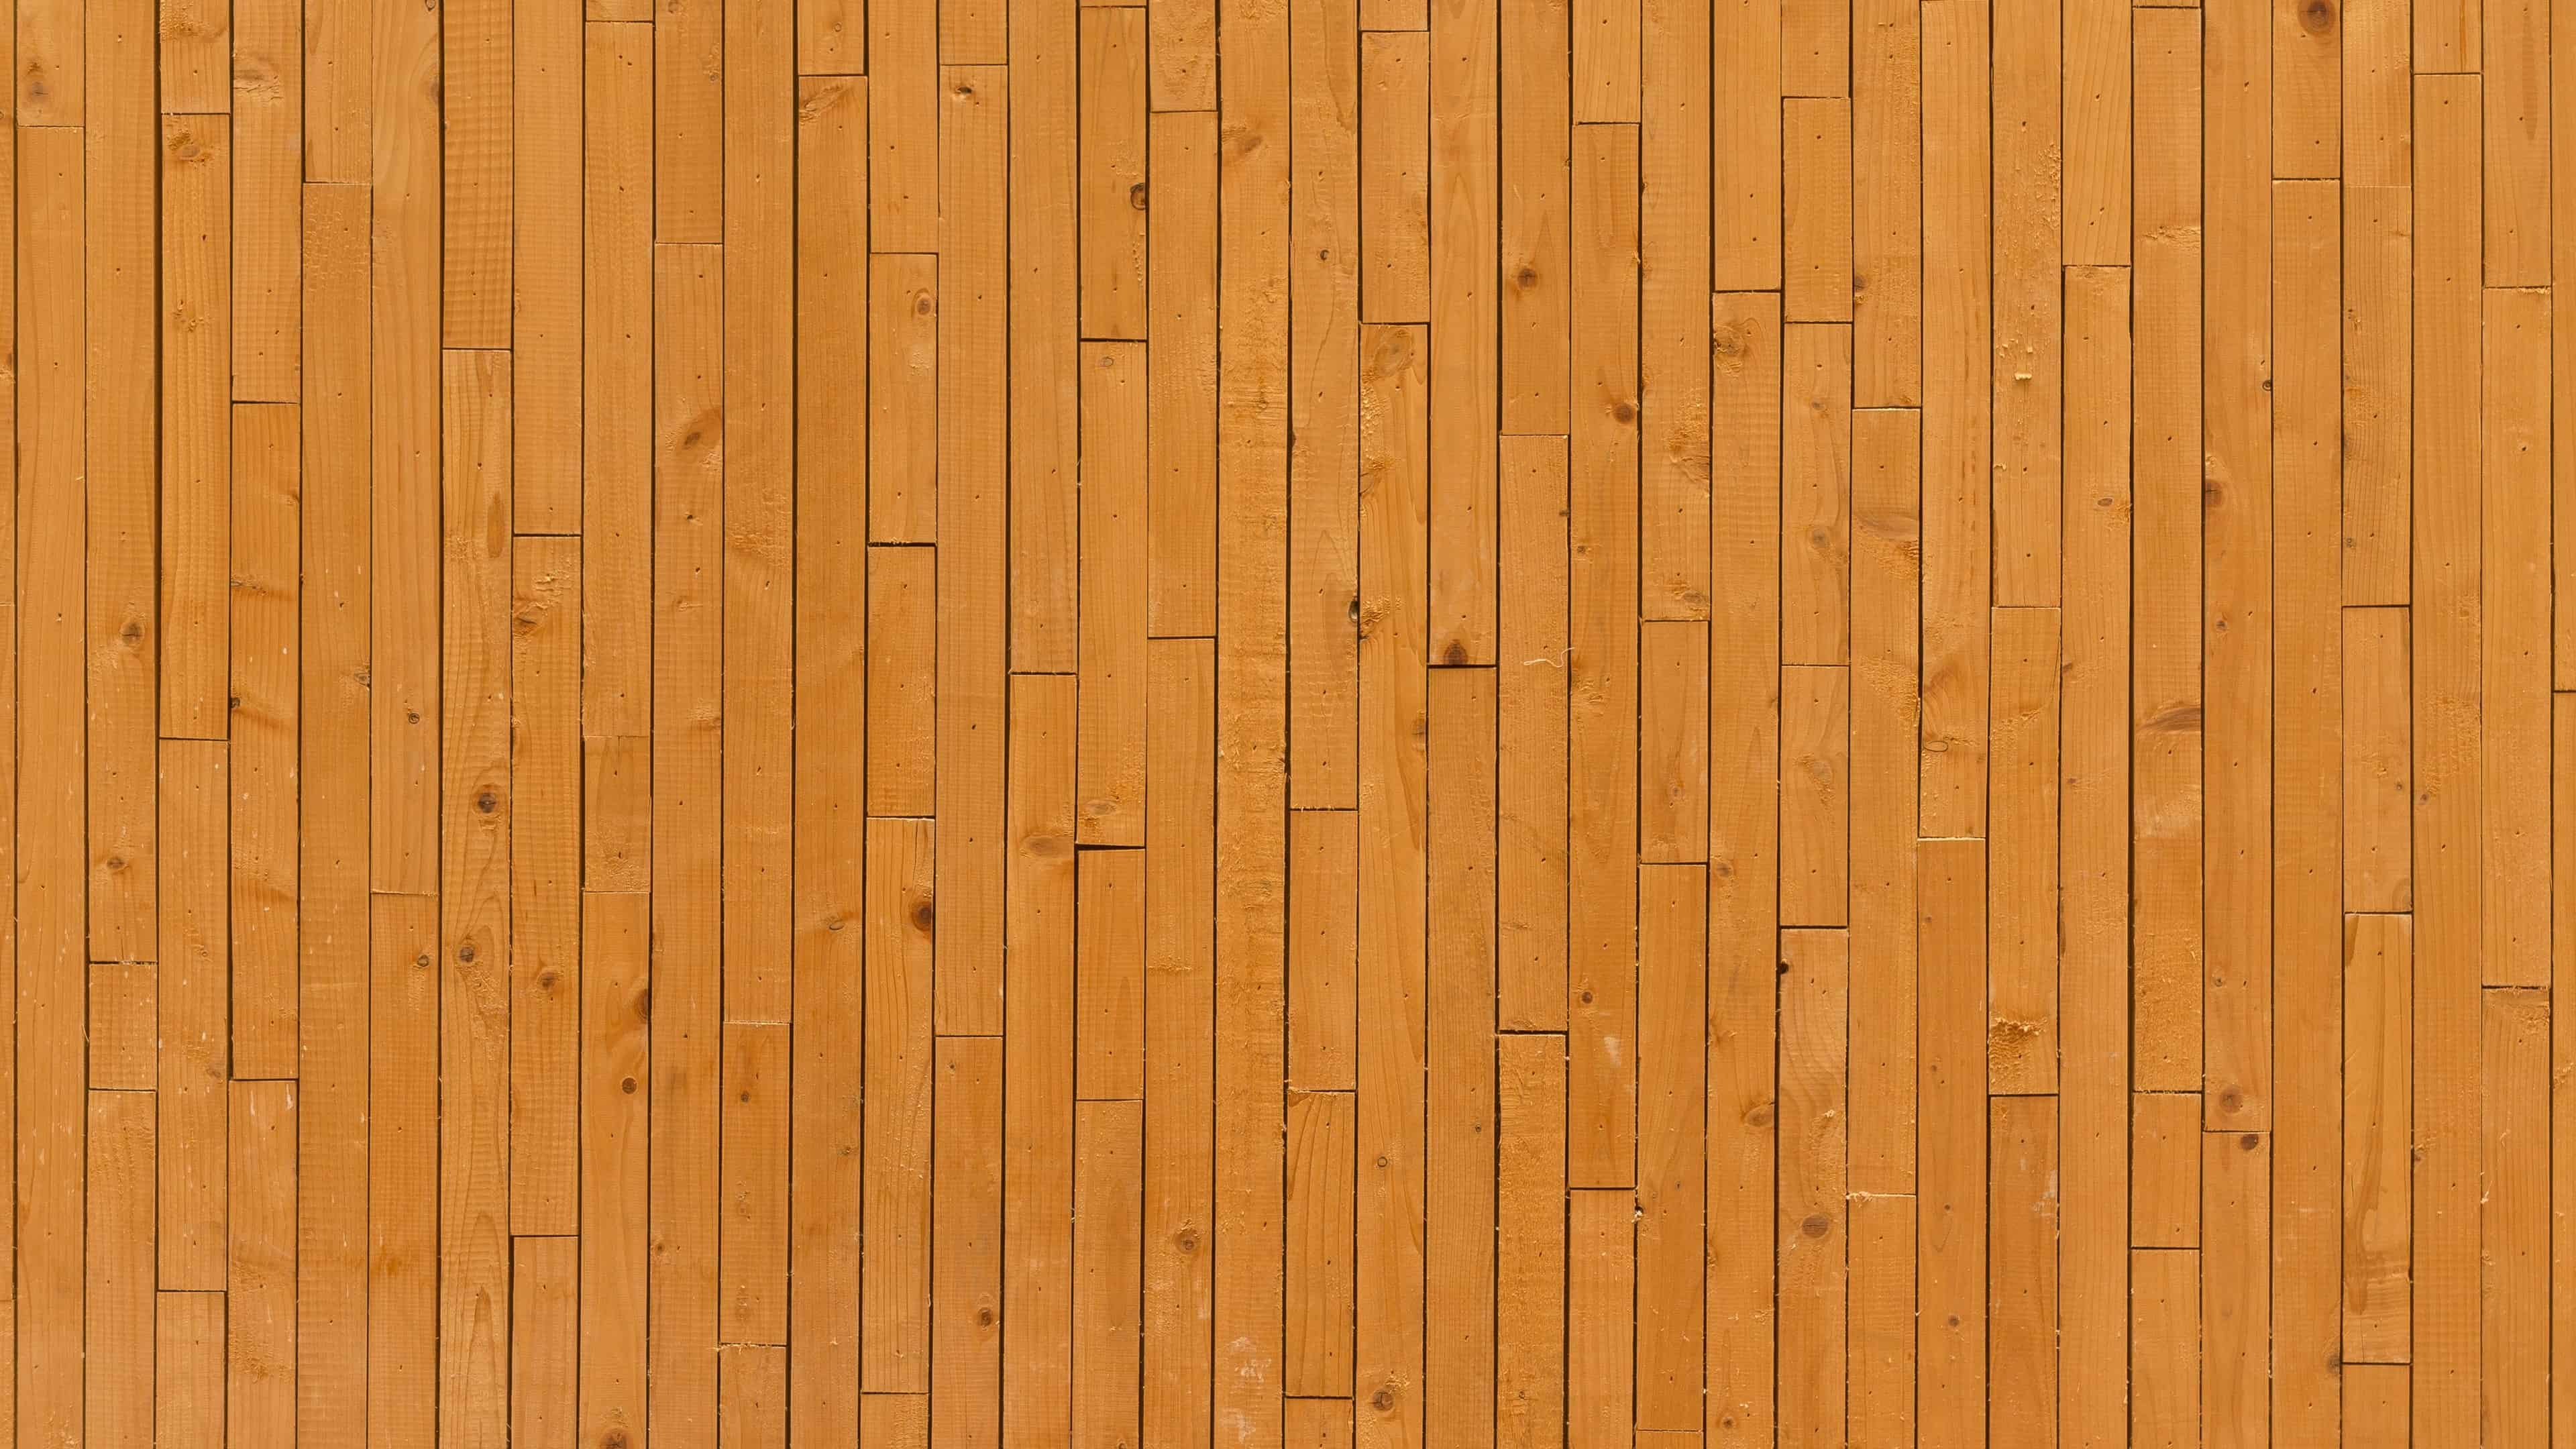 Những bản vẽ về gỗ planks sẽ khiến bạn say mê với nét rustic và cổ điển. Hãy tham khảo những hình ảnh này để tìm kiếm cảm hứng và trang trí cho không gian của bạn một cách độc đáo.